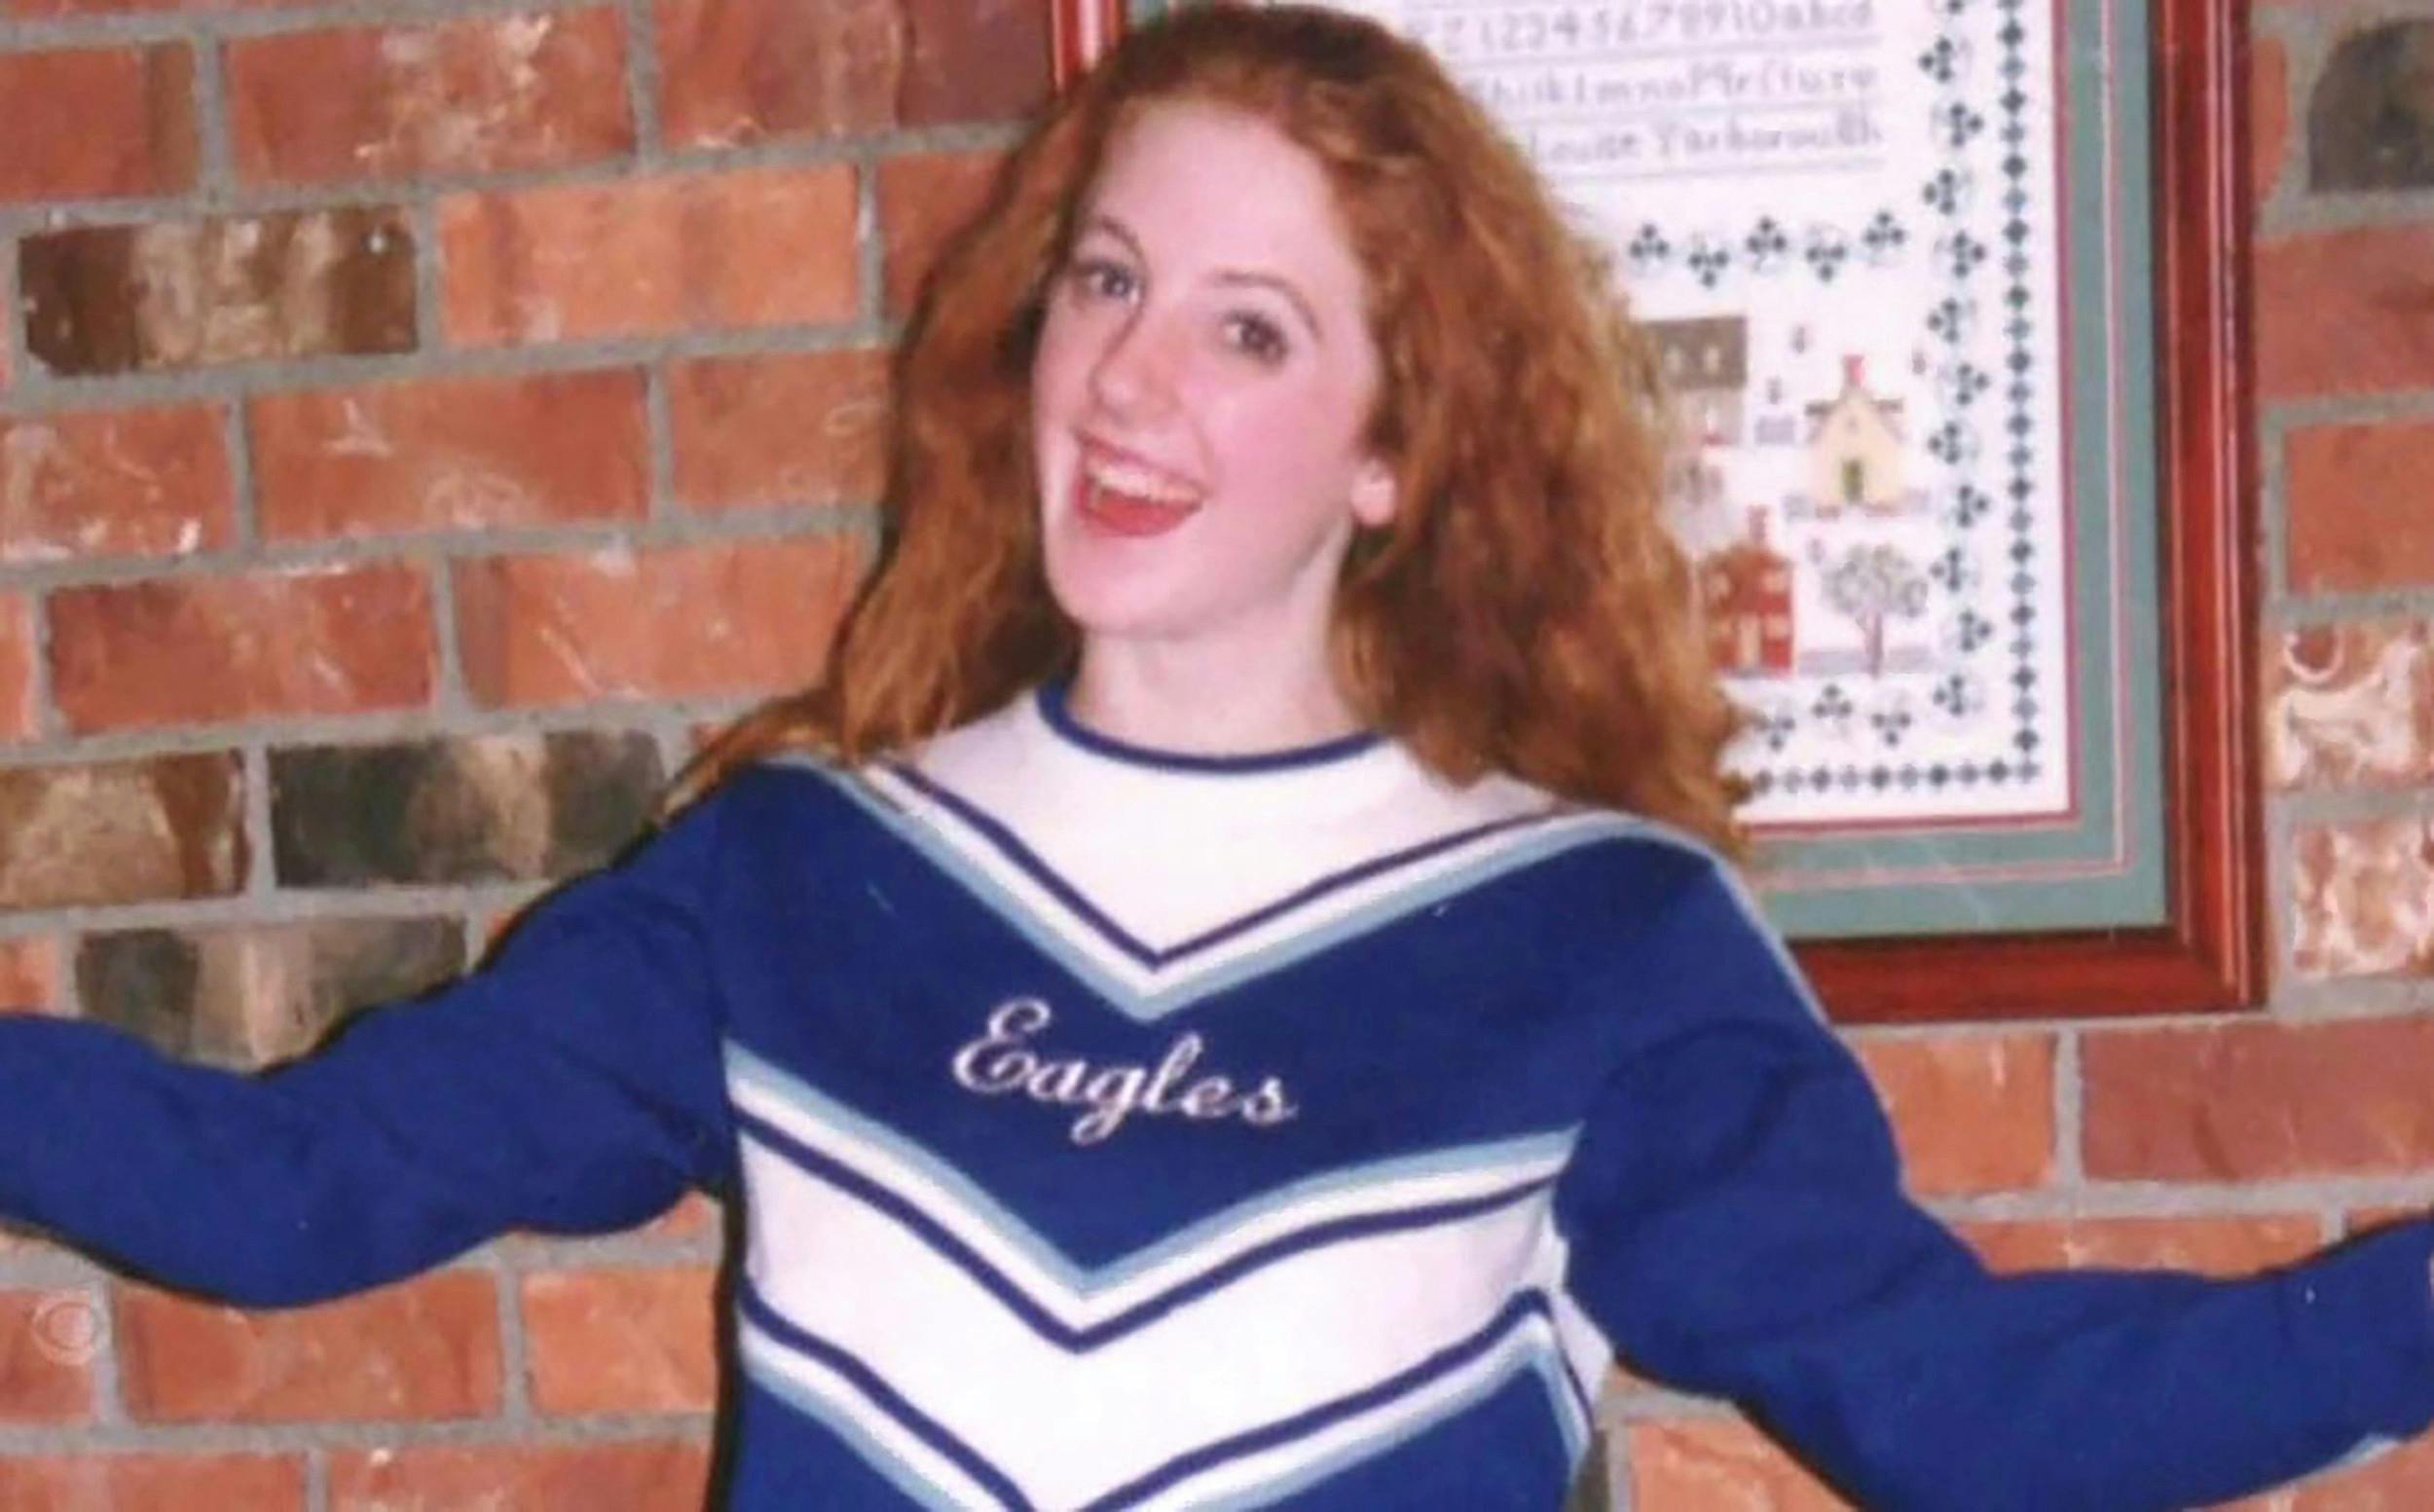 Sarah var vild med at være cheerleader. Her er hun fotograferet i sin uniform.